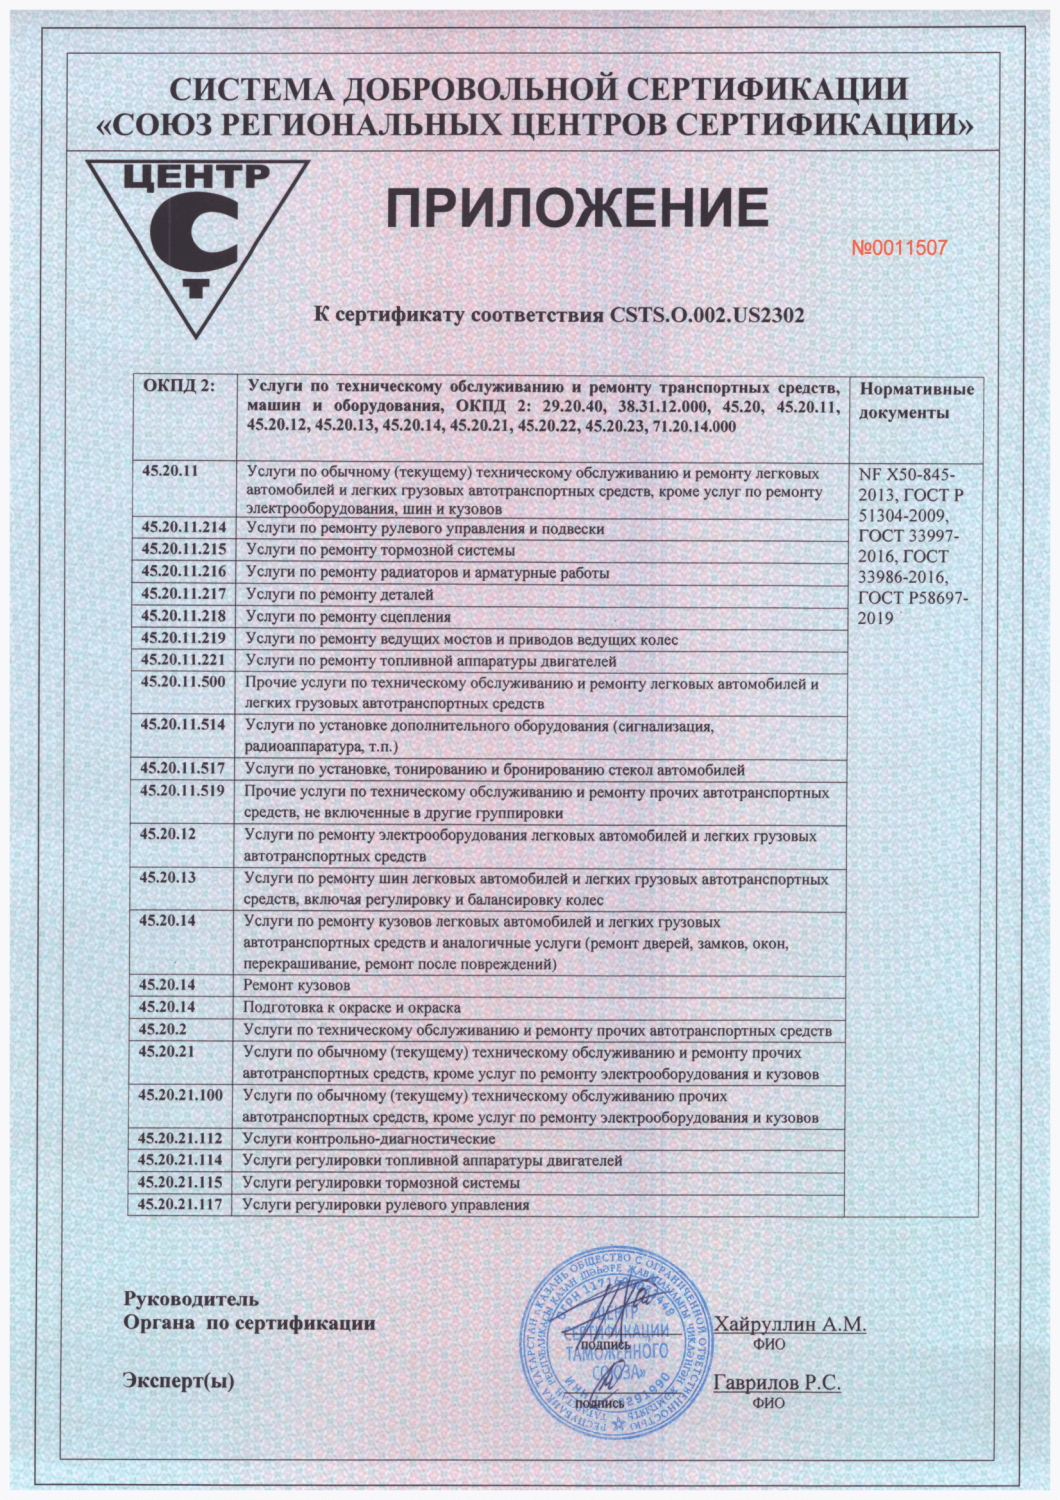 Автомобильная сертификация